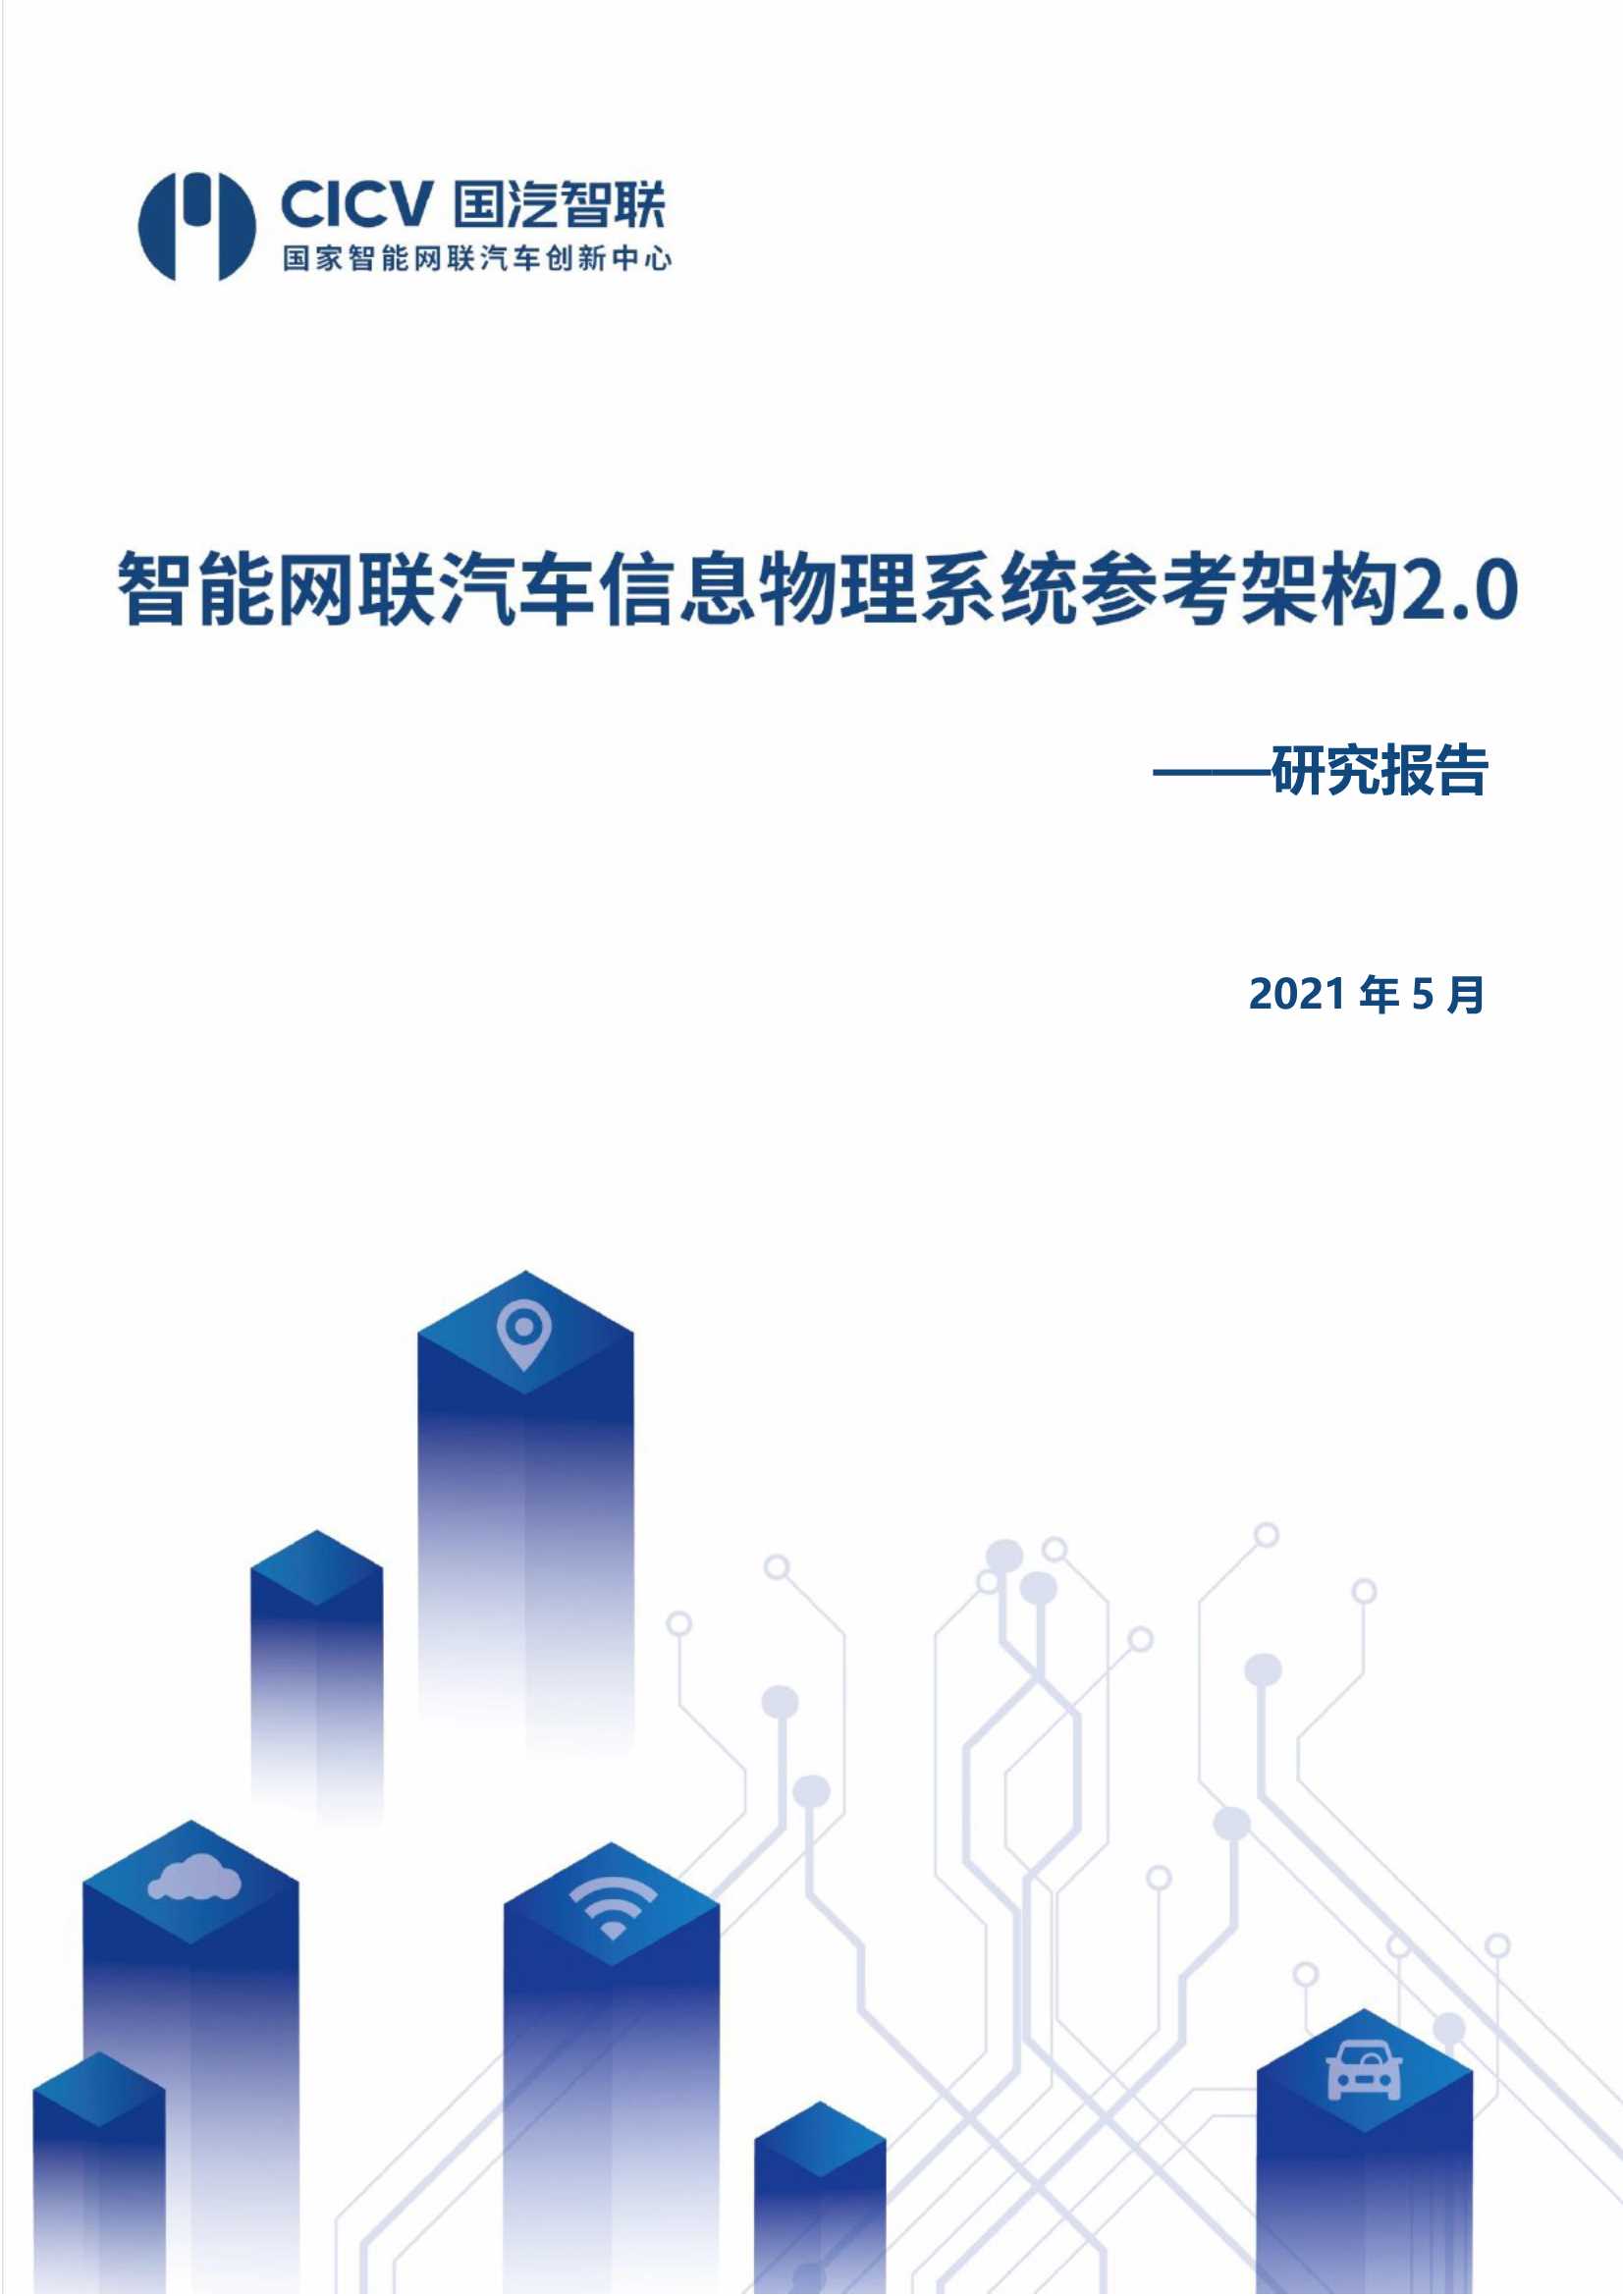 CICV国汽智联-智能网联汽车信息物理系统参考架构2.0-2021.05-169页